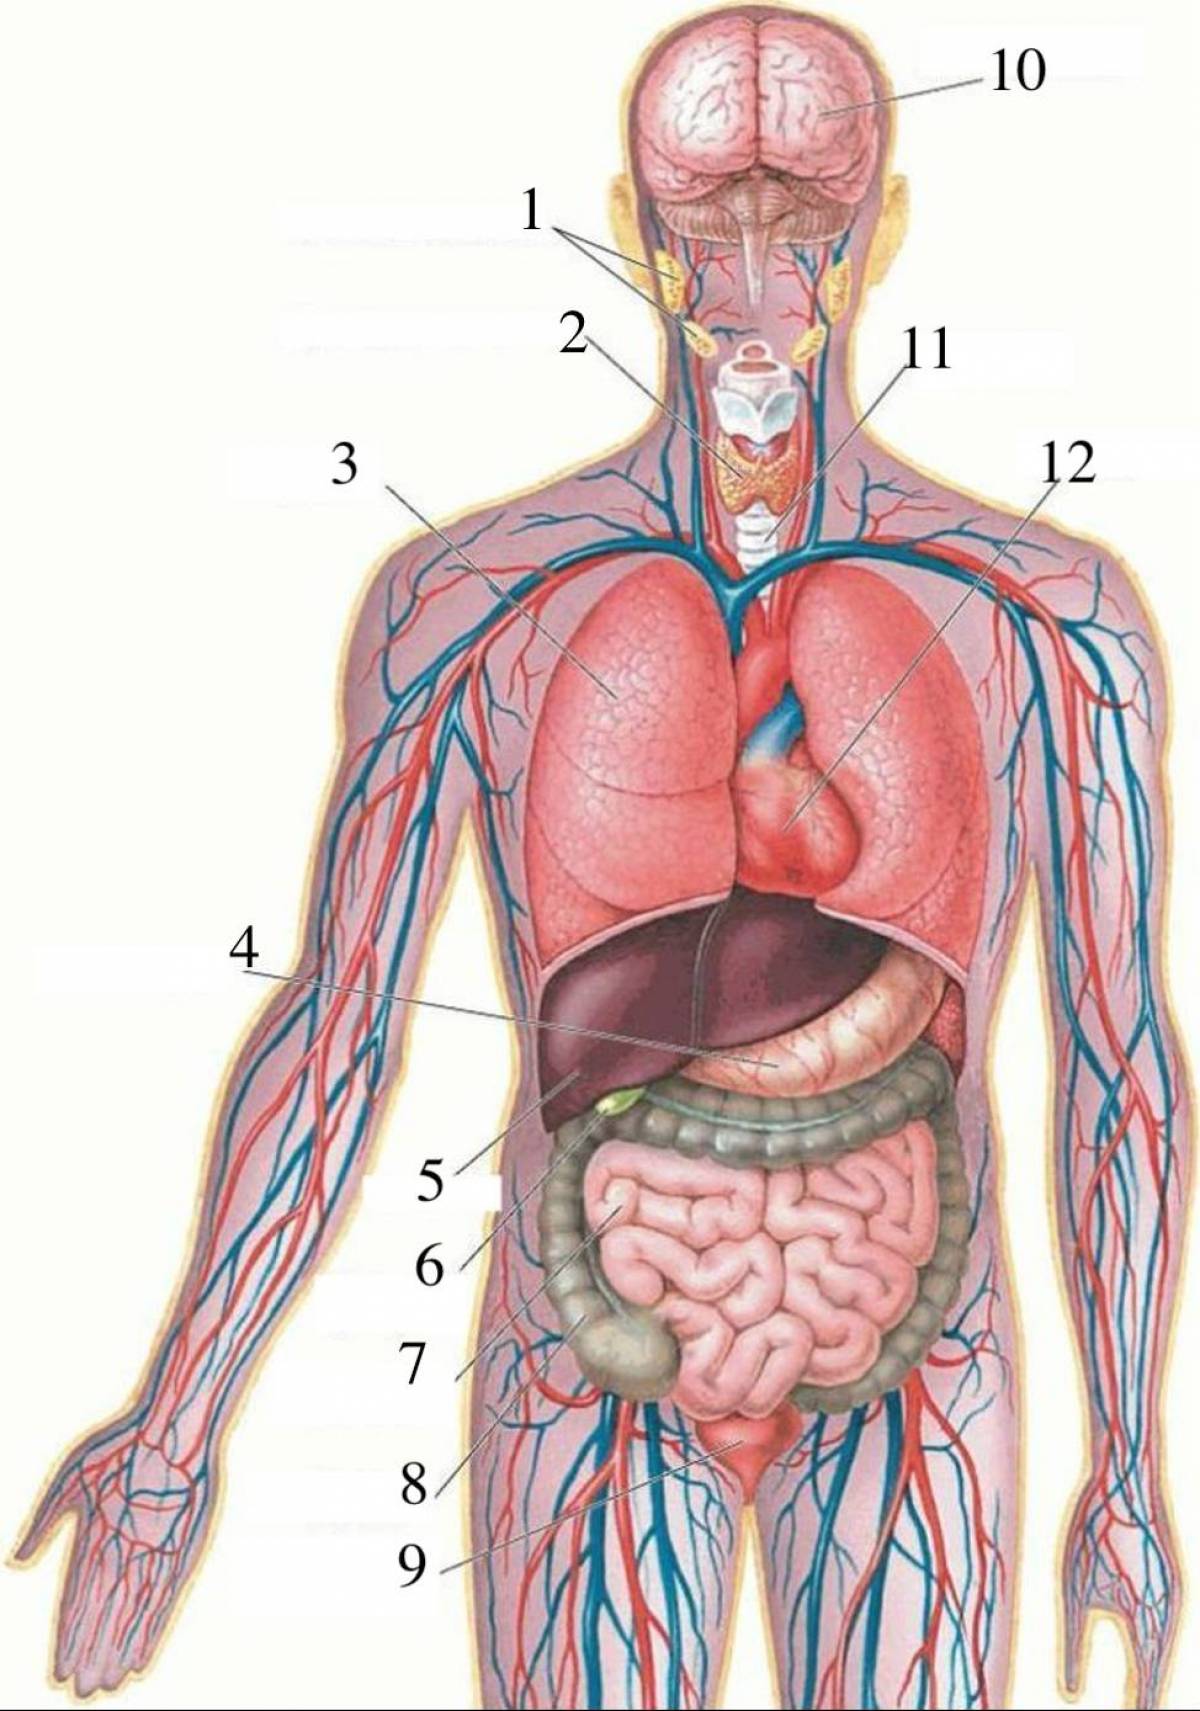 Строение мужчины внутренние органы фото. Внутренности человека анатомия расположение. Анатомия человека внутренние органы расположение у мужчин. Внутреннее строение организма человека схема. Строение человека внутренние органы фото с надписями спереди.